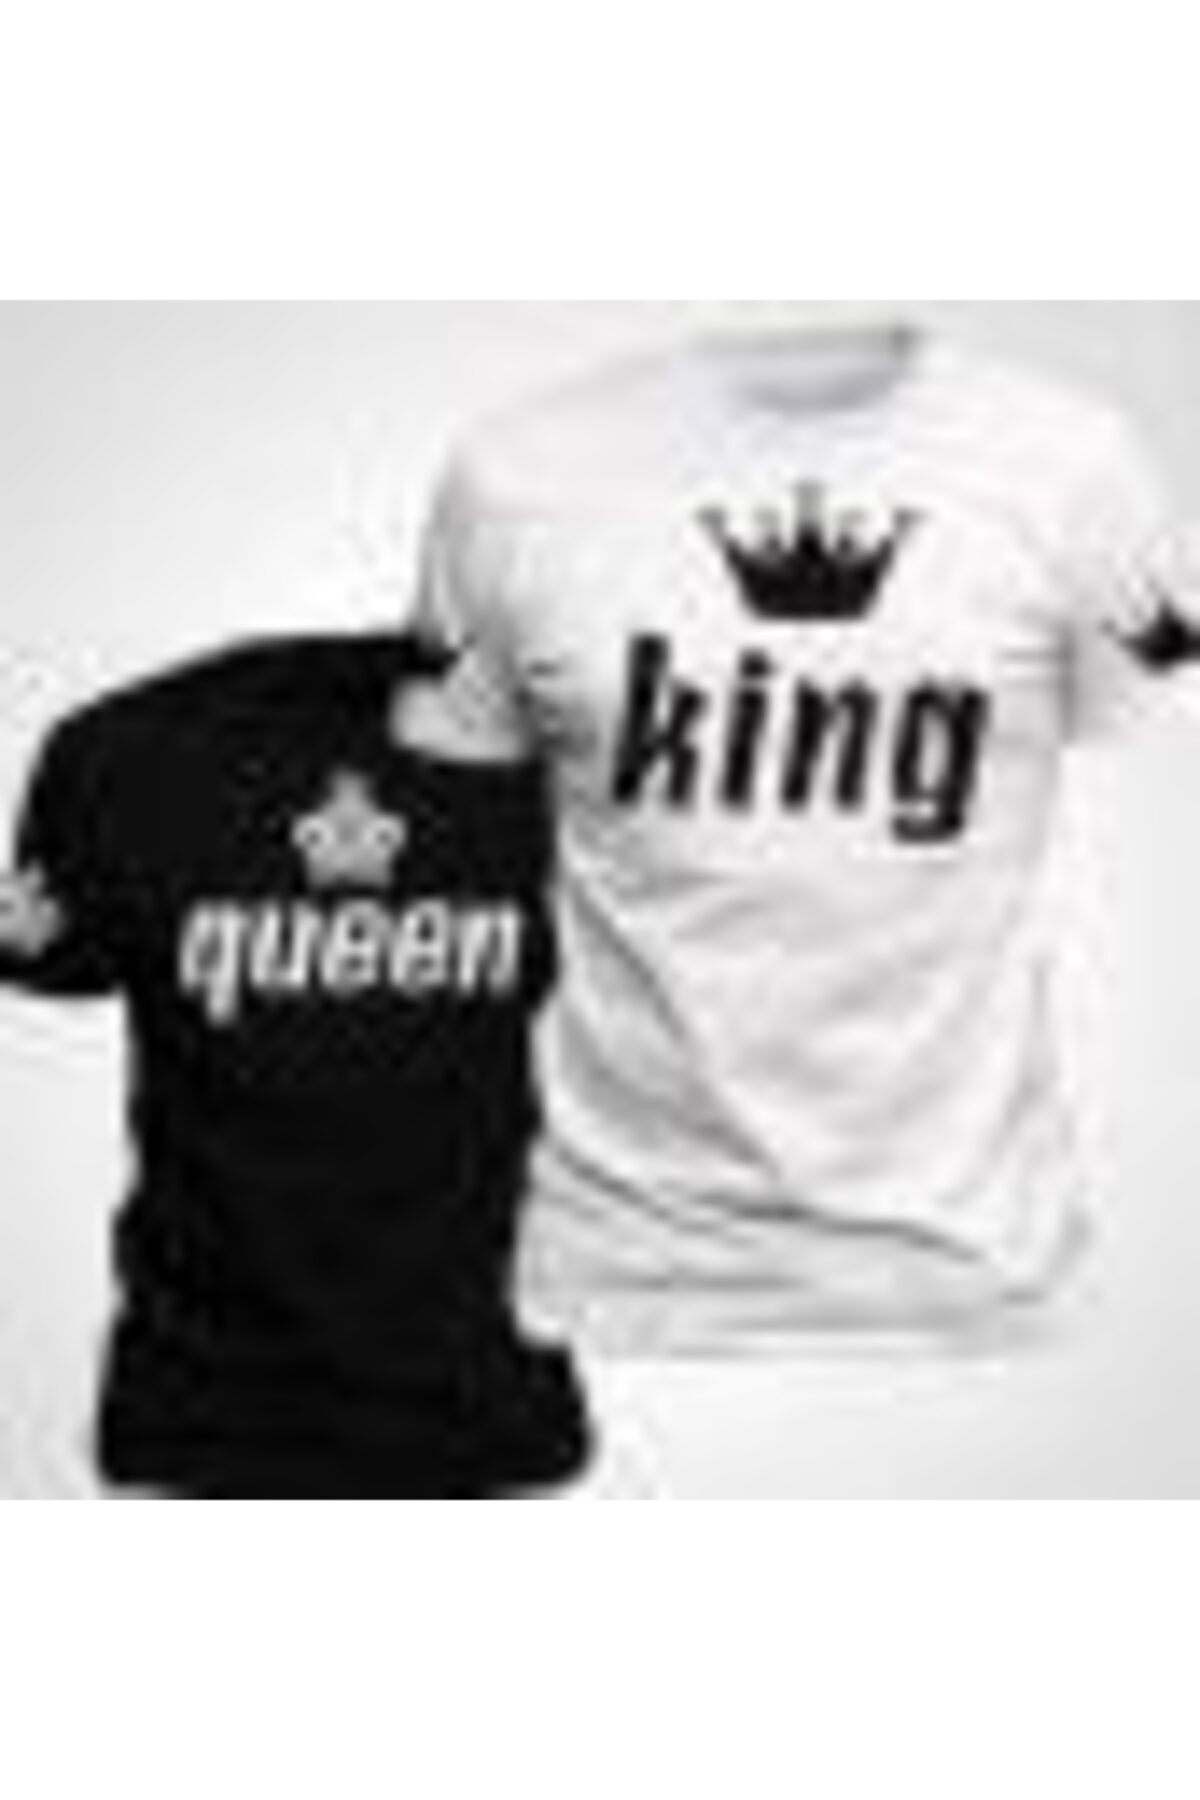 HediyeMania Sevgili Tişörtleri Bay Bayan Çift Kombini King Queen Yüksek Kalite Siyah Beyaz Tshirt 2 Adet